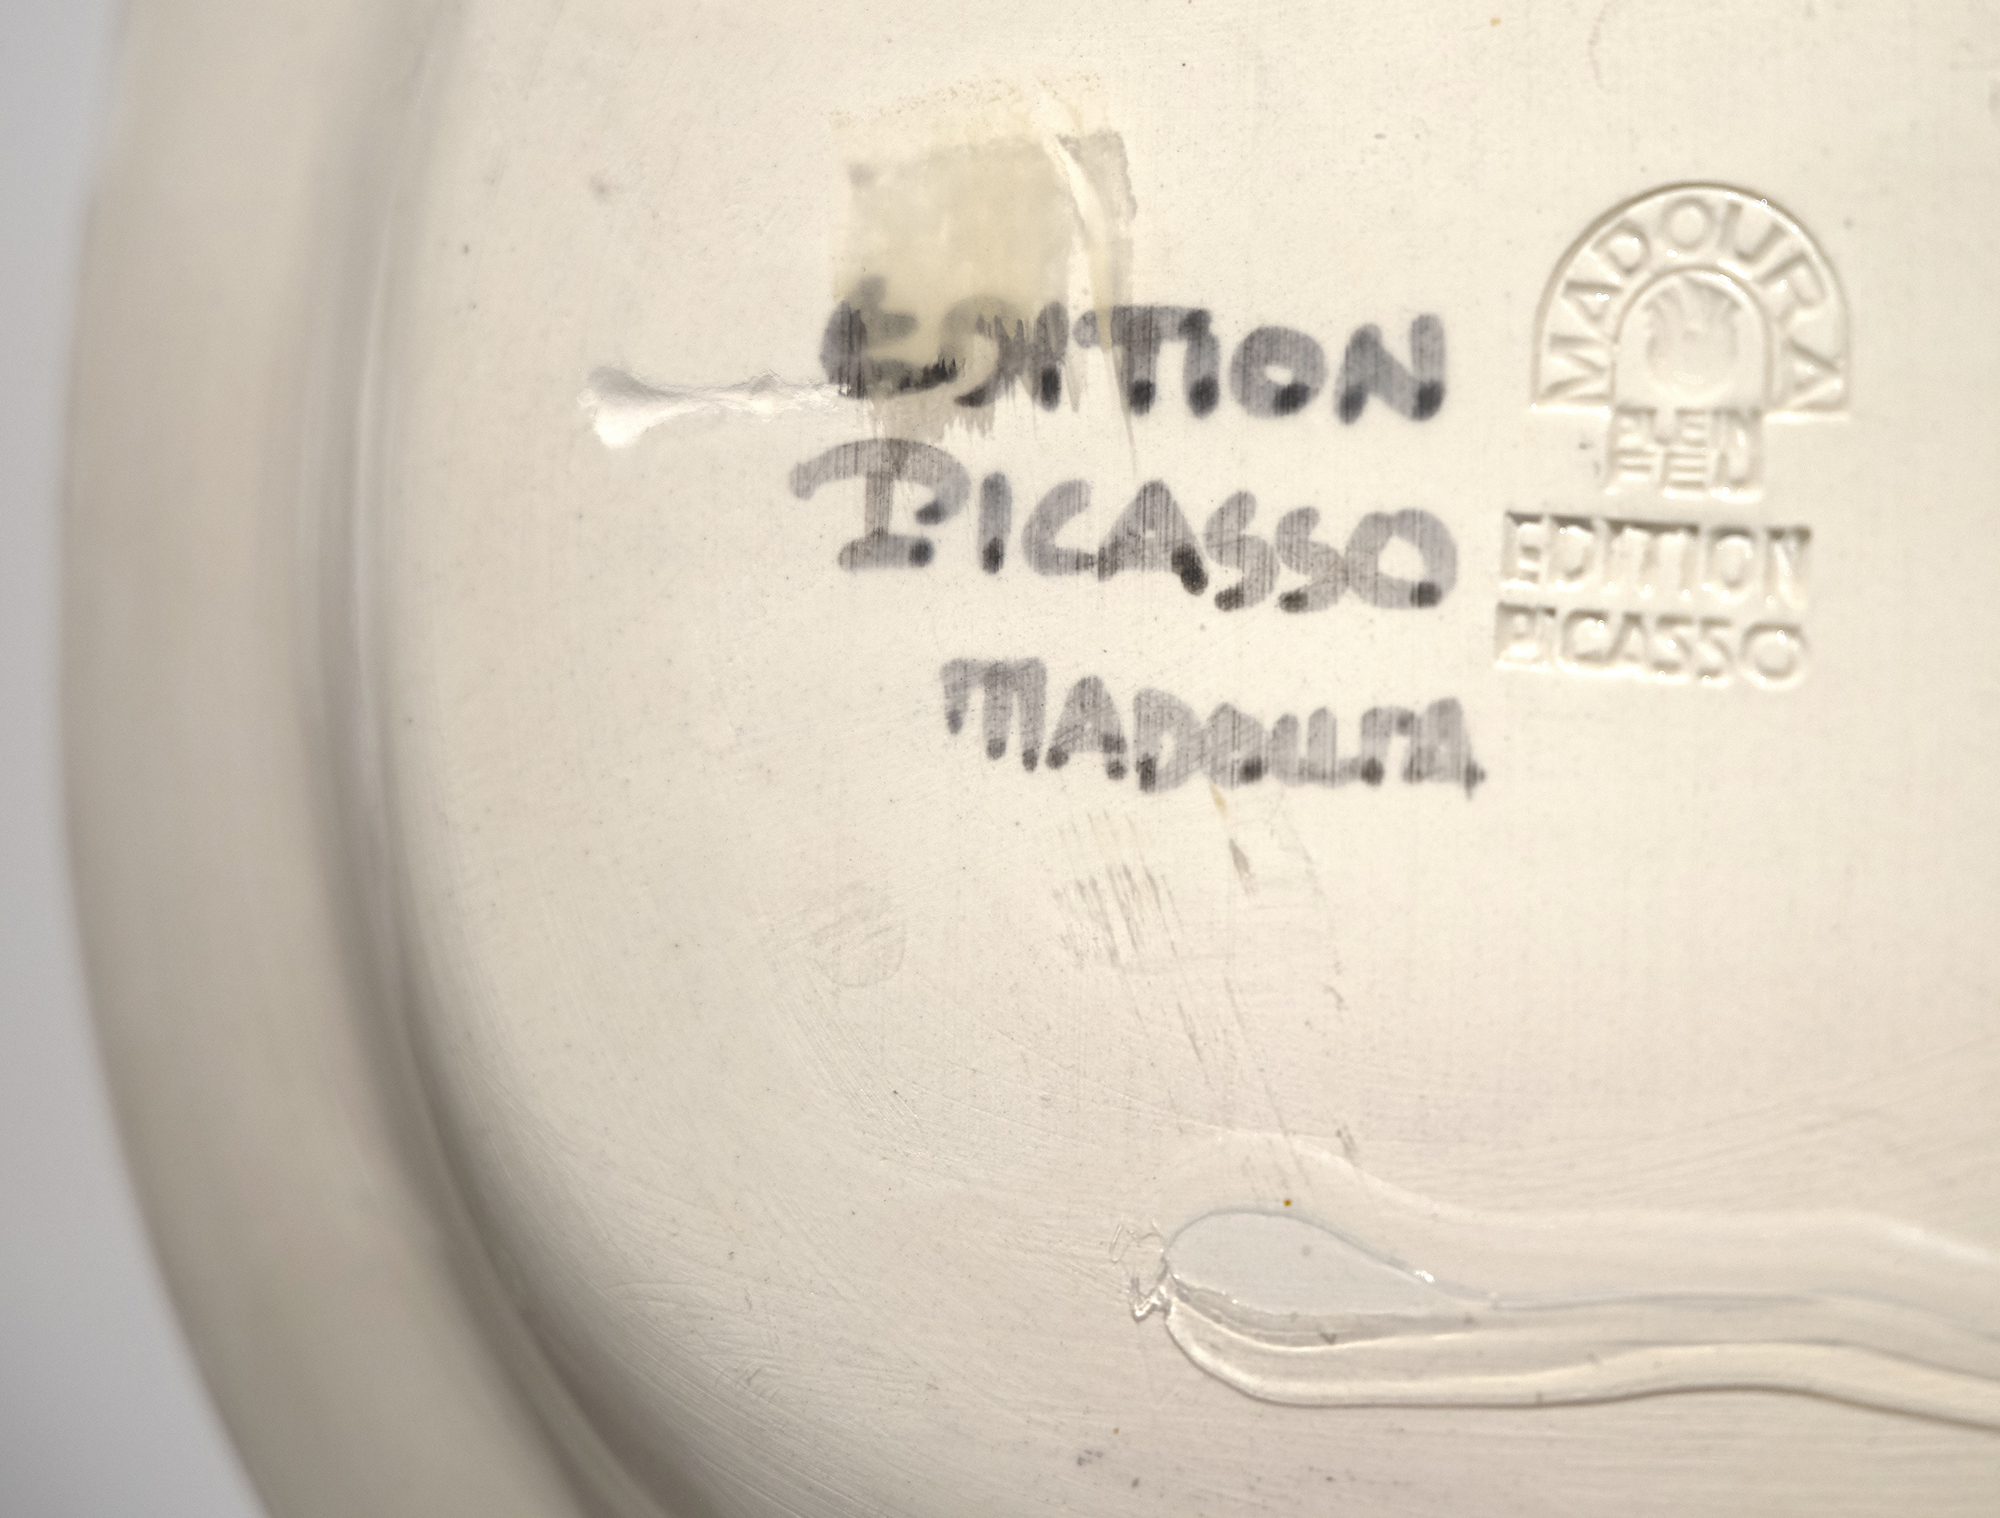 פבלו פיקאסו - לה דאנס - צלחת קרמיקה לבנה, חקוקה חלקית, עם אנגובה צבעונית וזיגוג - 12 1/2 x 15 אינץ '.